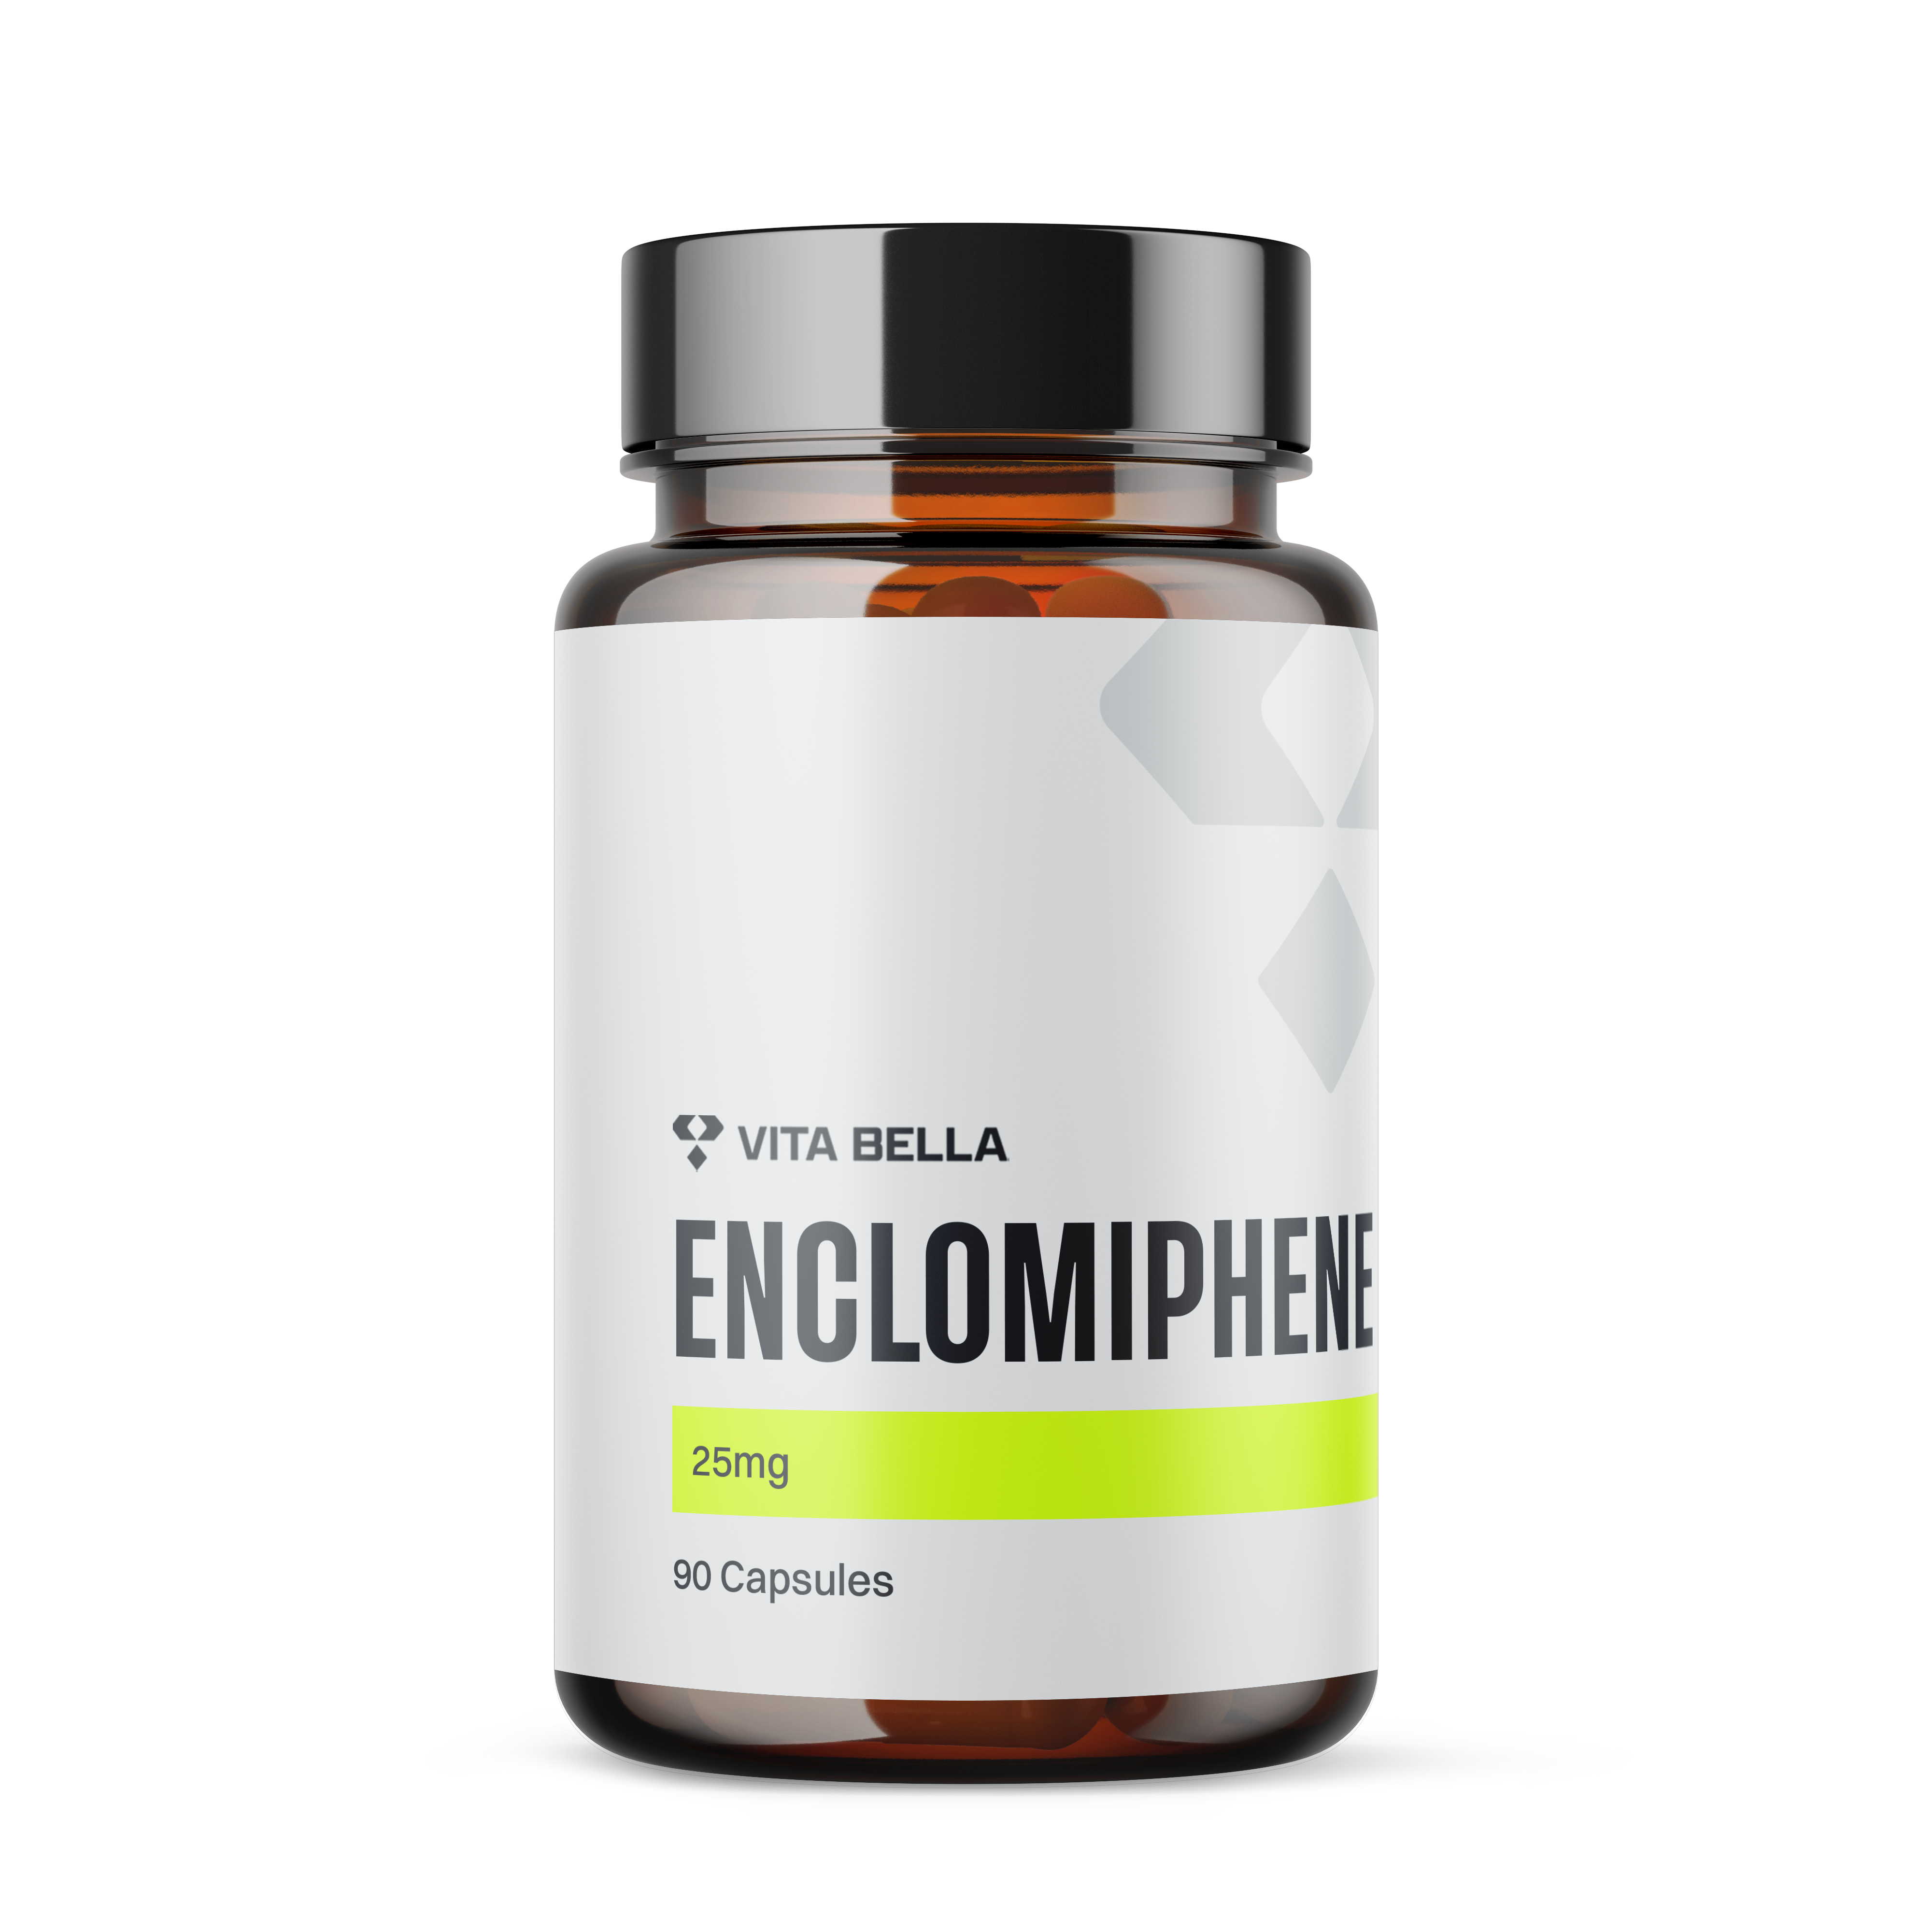 Enclomiphene capsules